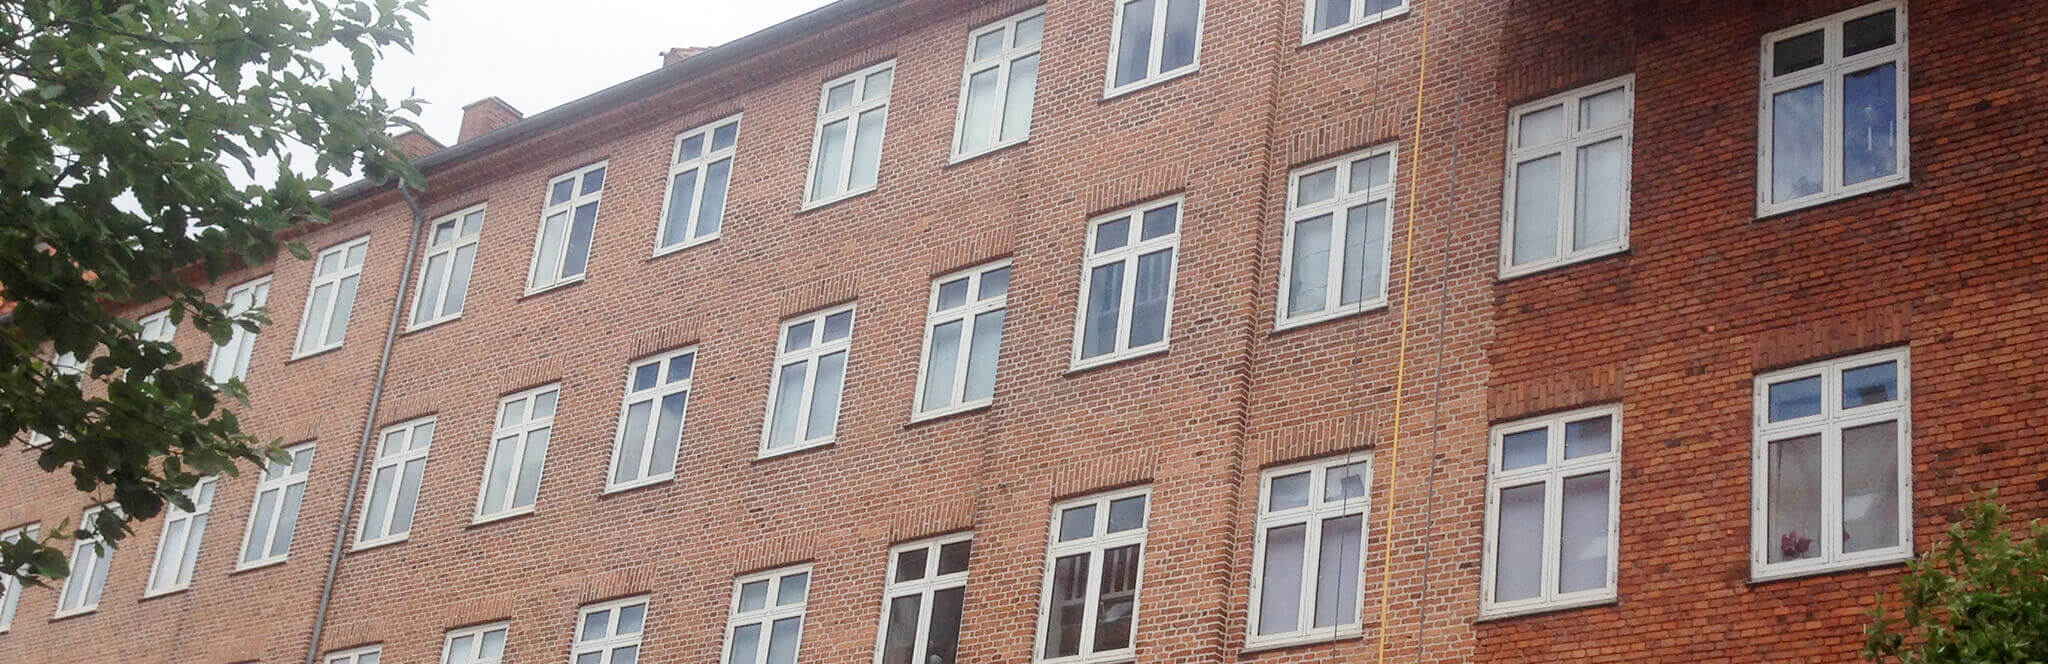 Ejendom med røde mursten har fået pudset facaden og renoveret mørtelfugerne af Køge Bugt Facadeentreprise